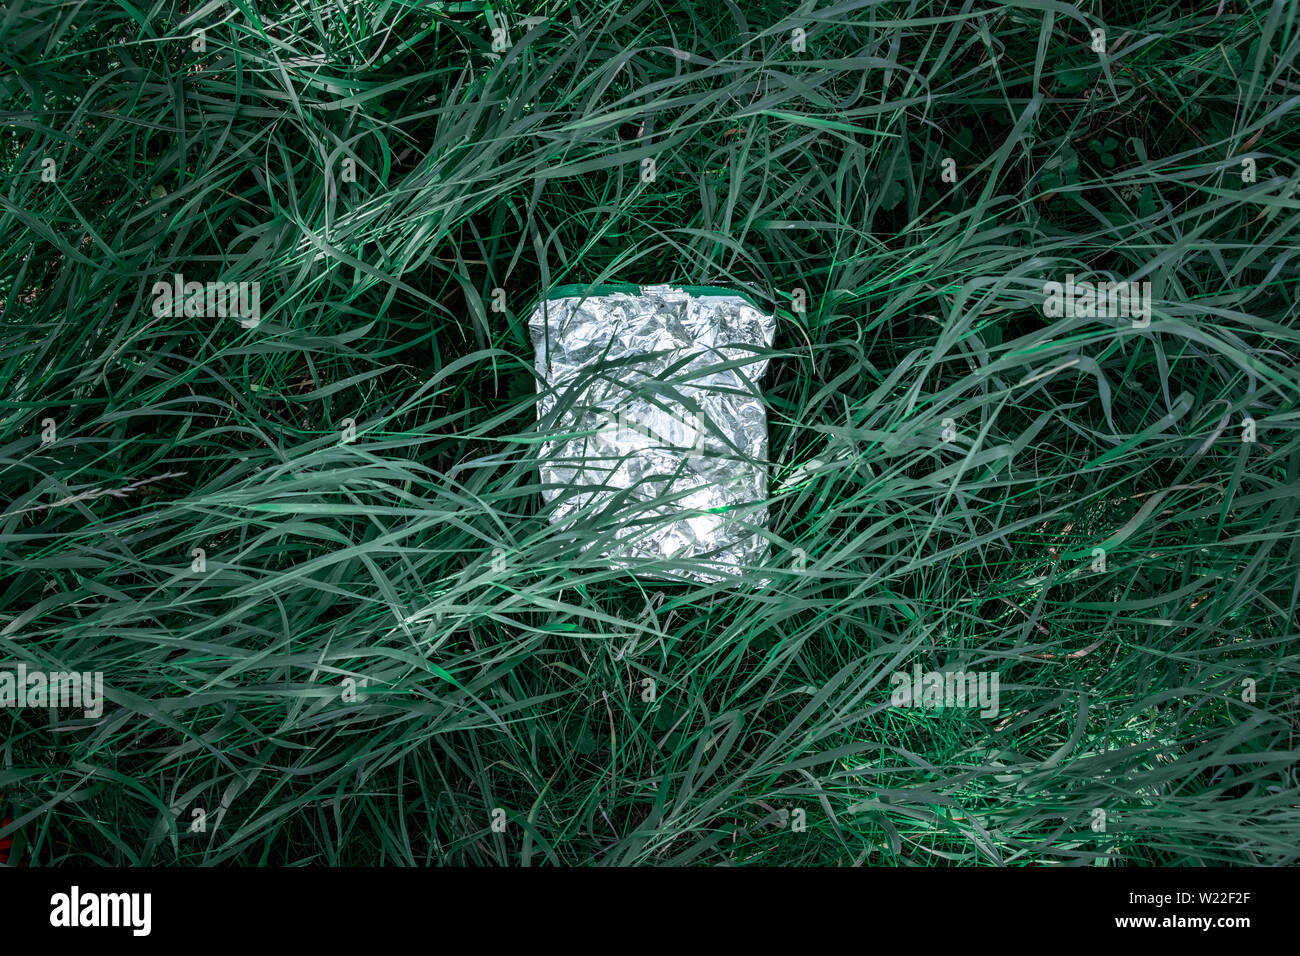 Plastikbeutel im grünen Gras, Natur Umweltverschmutzung Konzept. Stück Kunststoff Papierkorb (leer essen Paket) weggeworfen auf einem Rasen Stockfoto